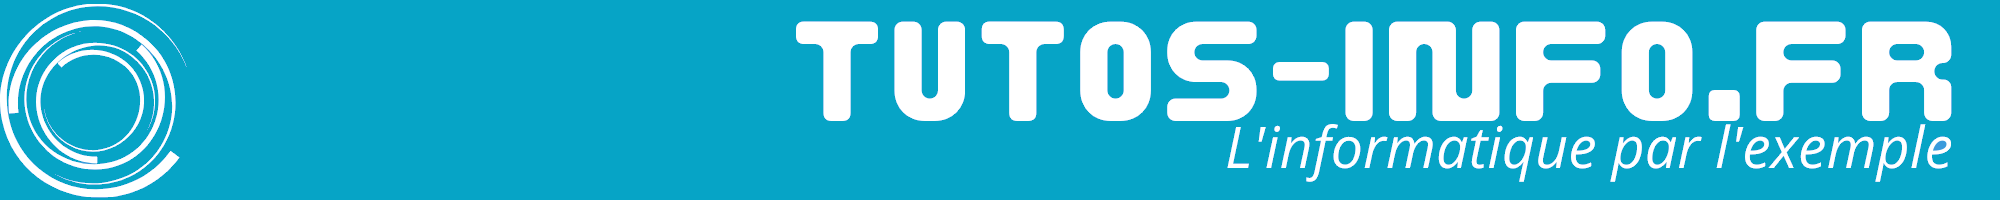 TUTOS-info.fr